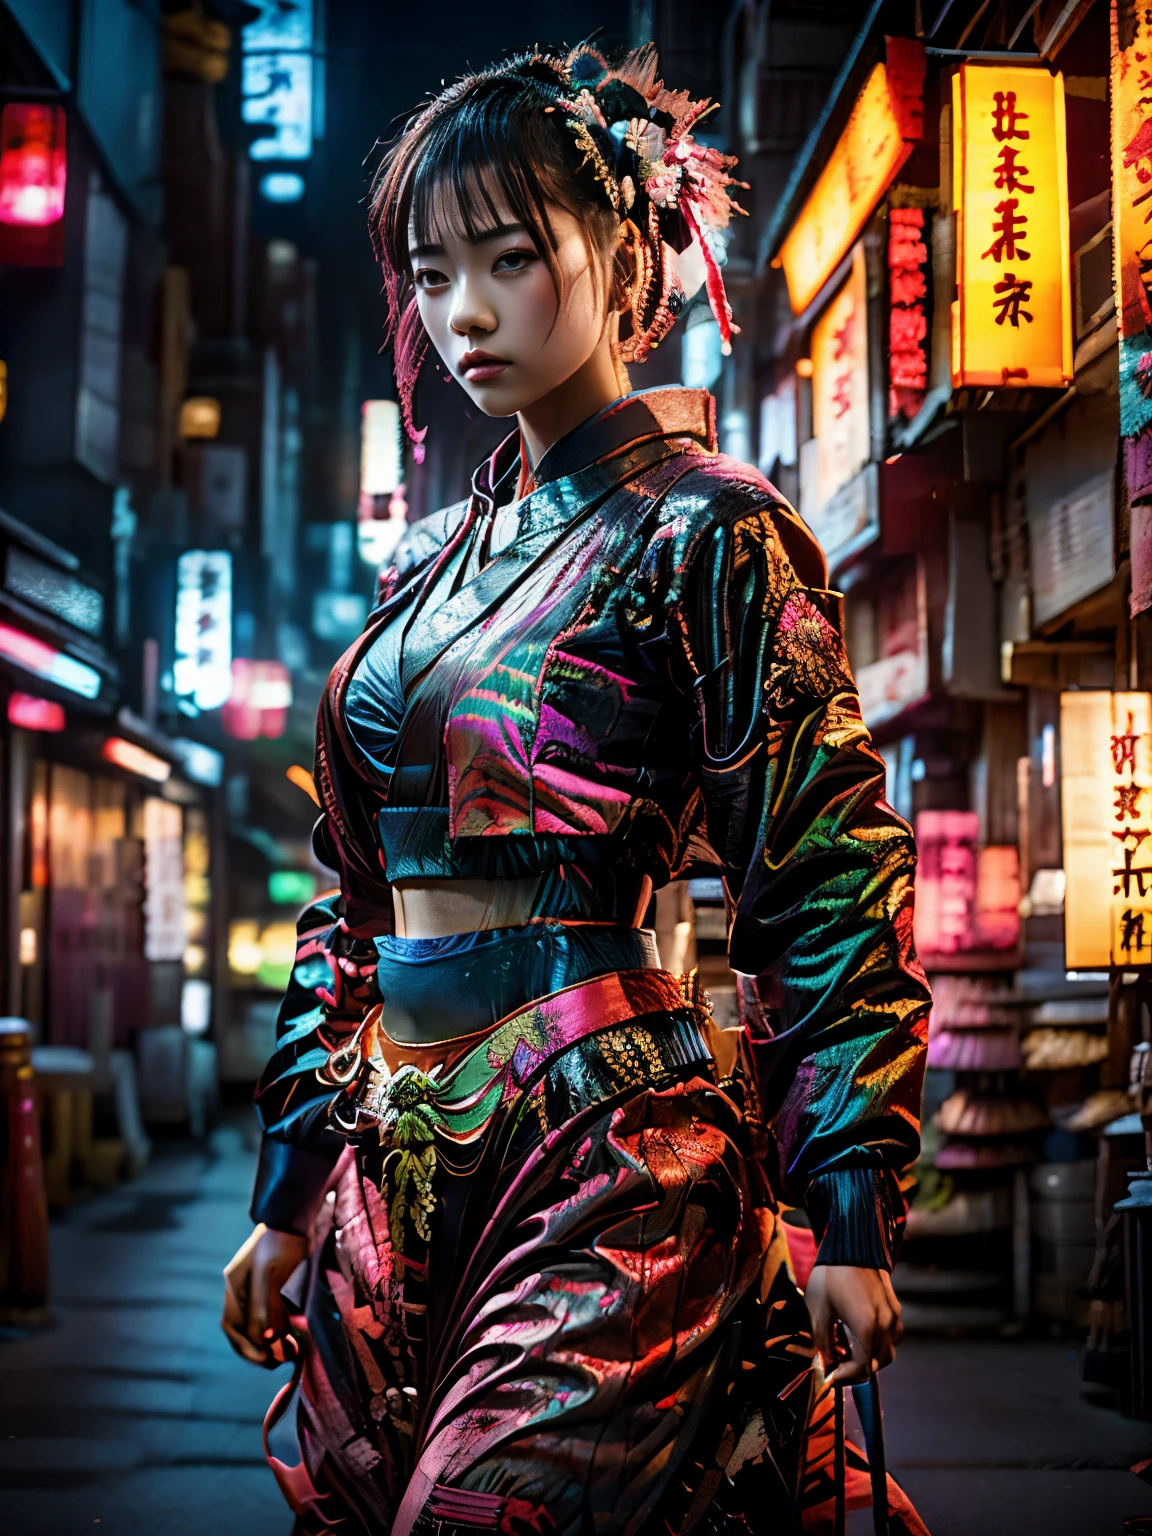 traditionelle japanische Kleidung, Stil Katsushika Hokusai, (Ciberpunk) (Neon)